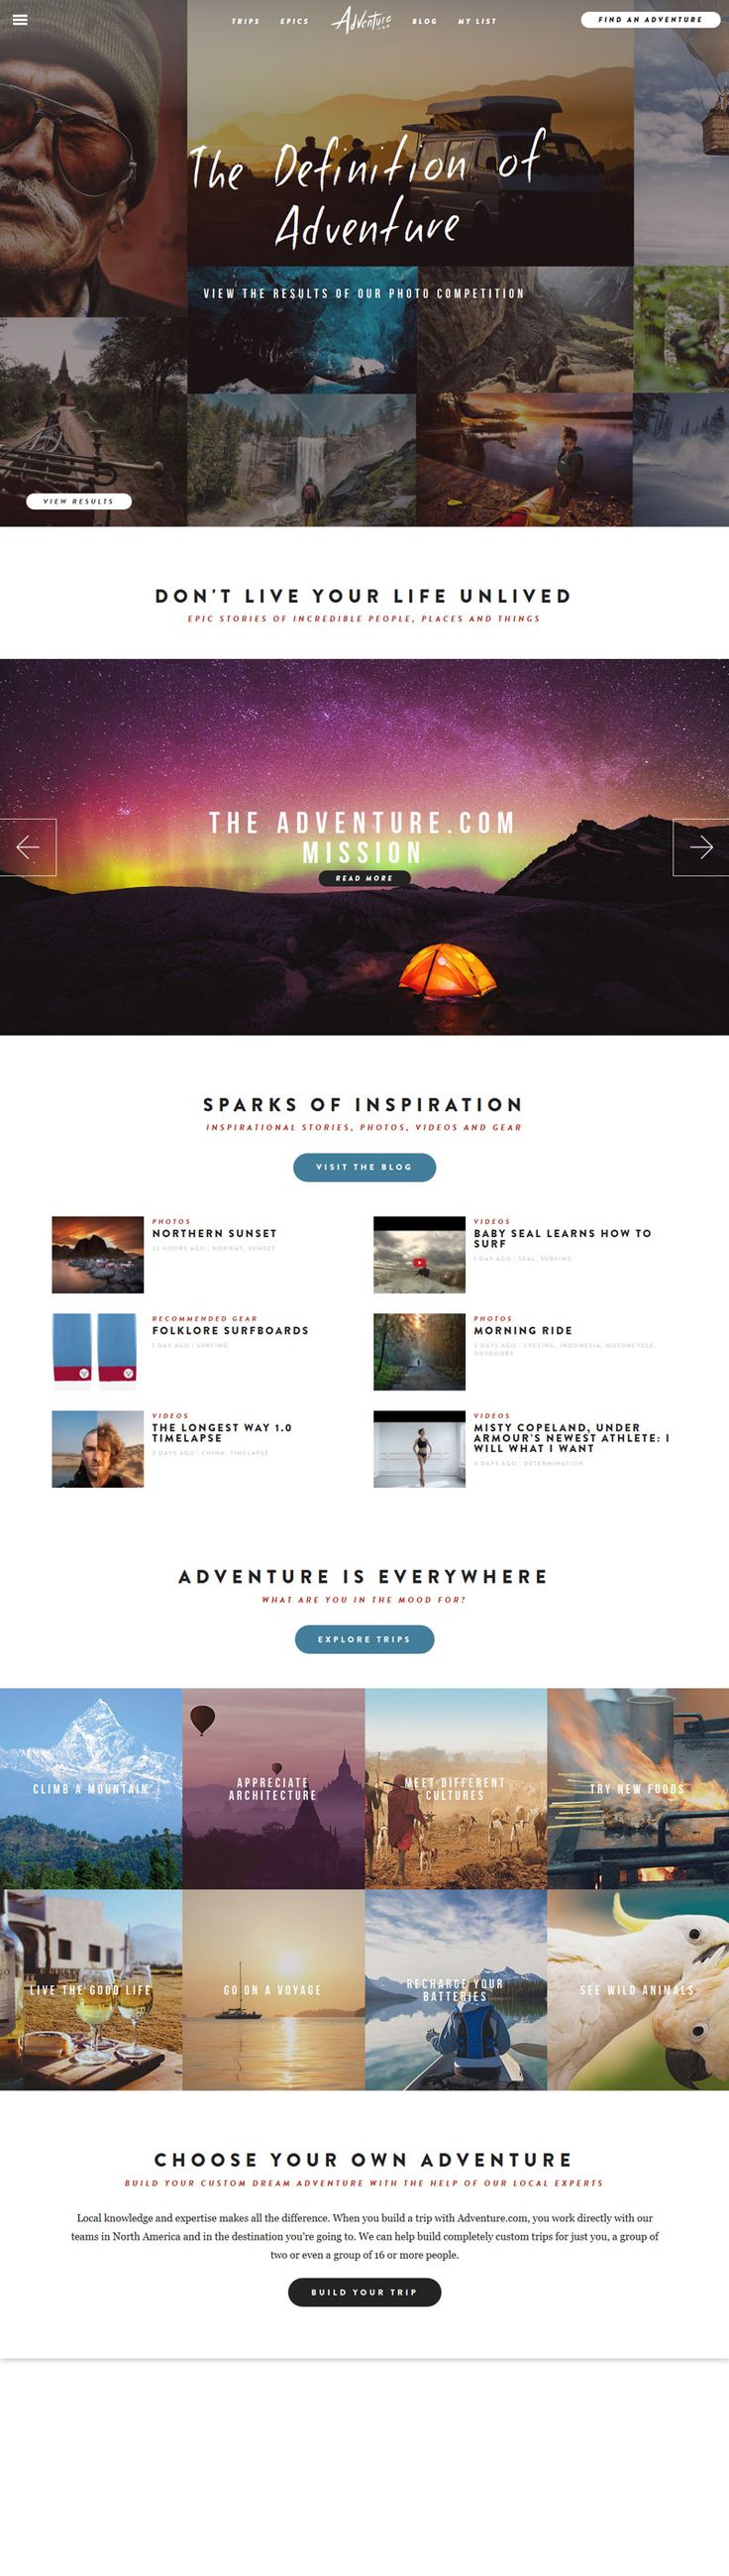 Adventure website